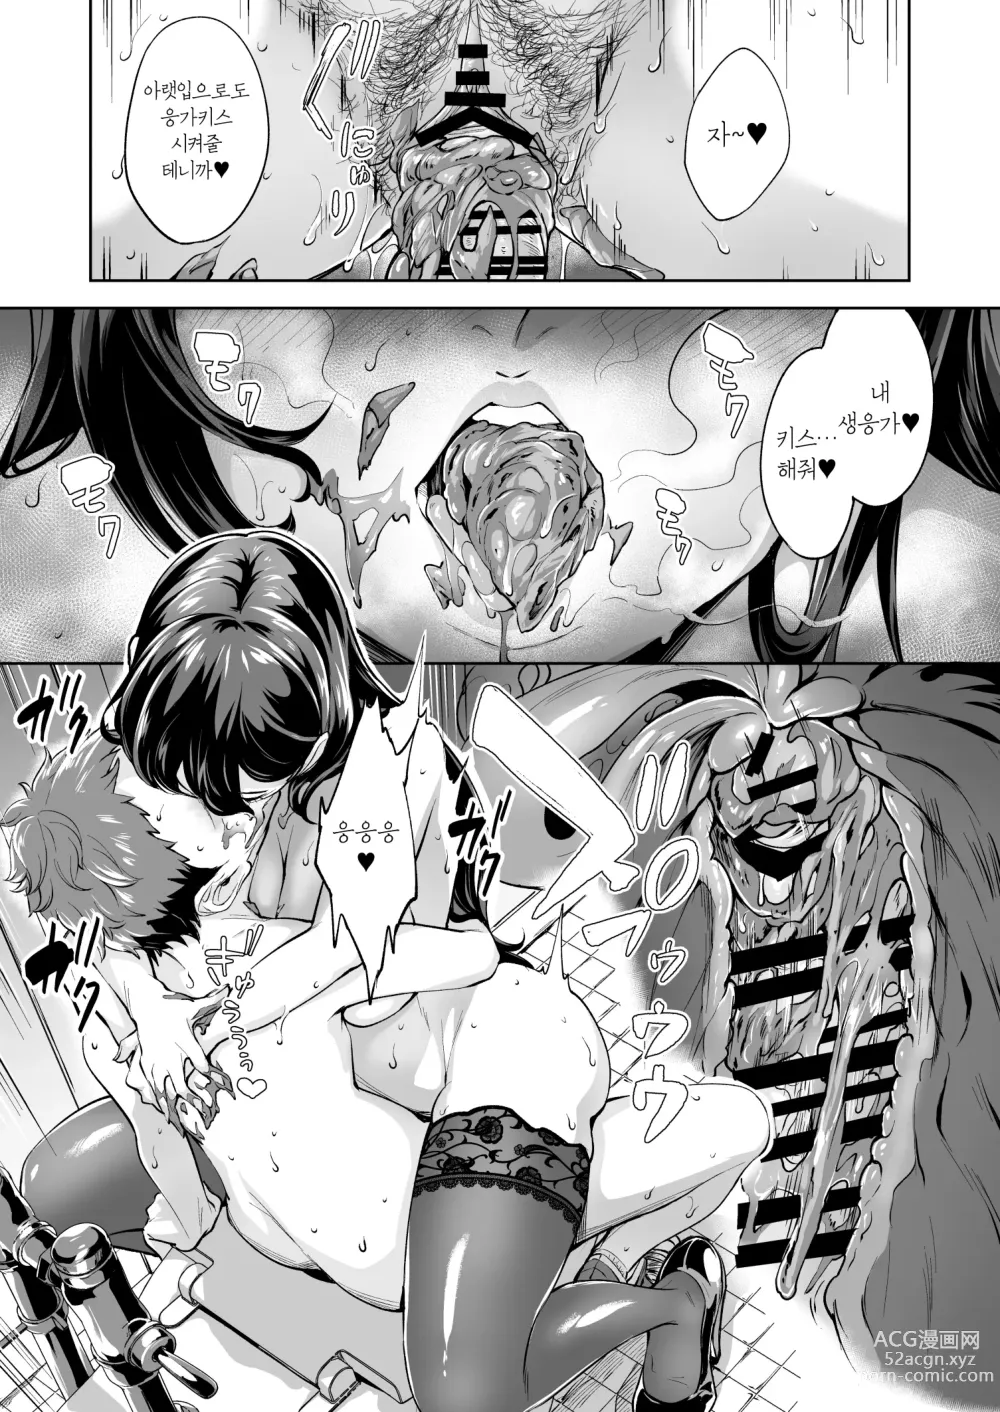 Page 32 of doujinshi 나타난 치녀는 연하킬러인 스카토로 변태였습니다 2